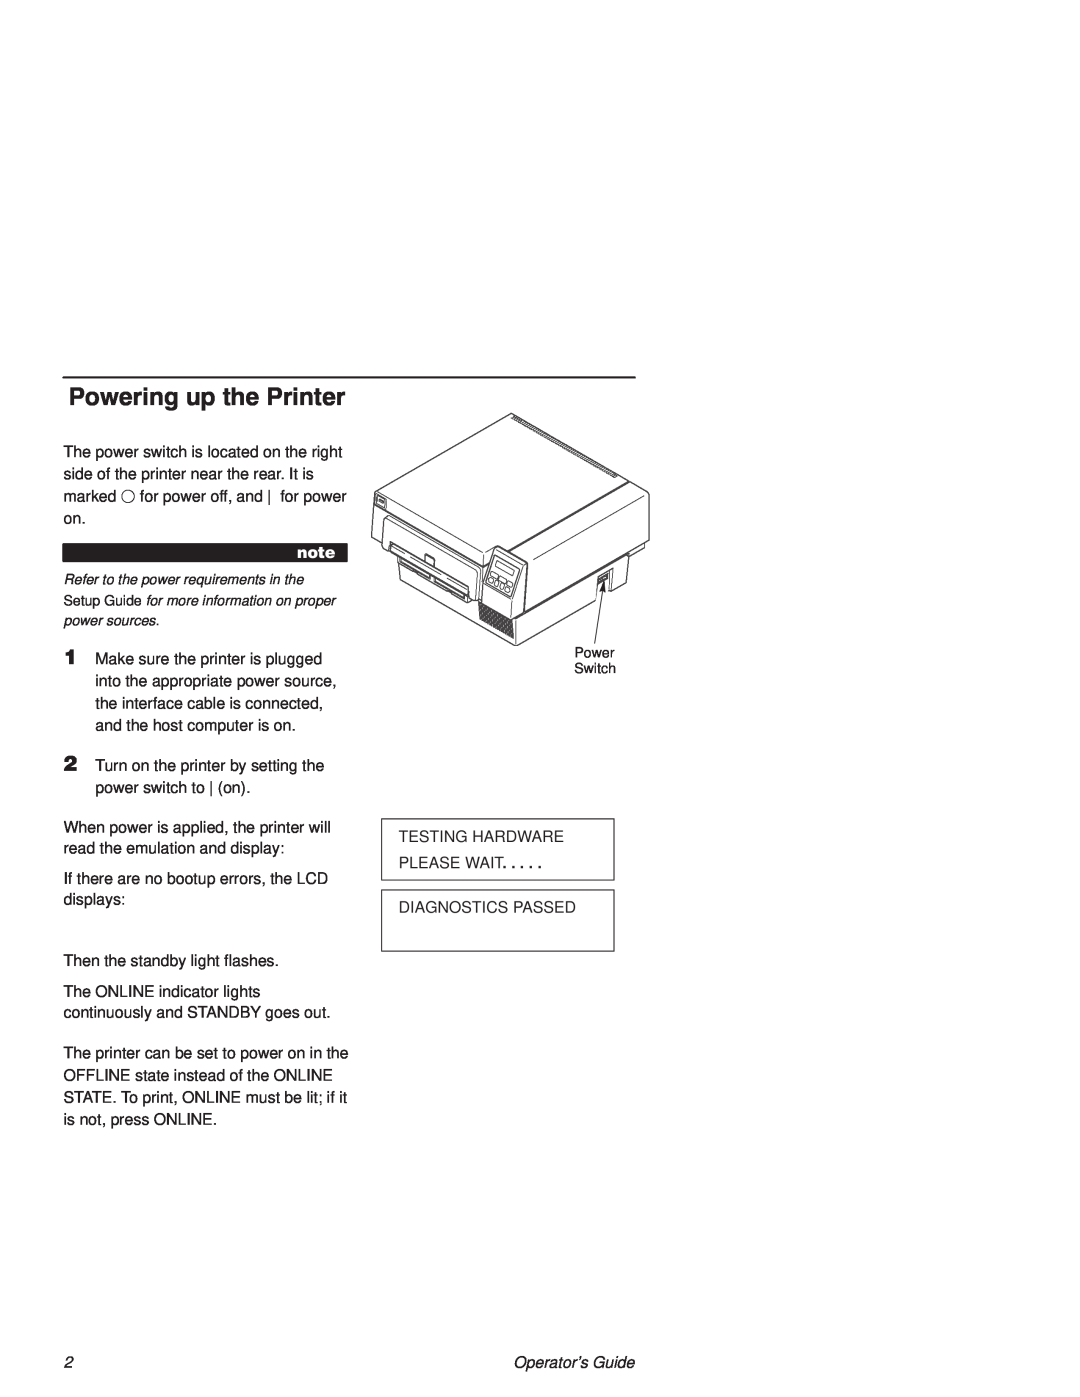 Printronix L1524 manual Powering up the Printer 